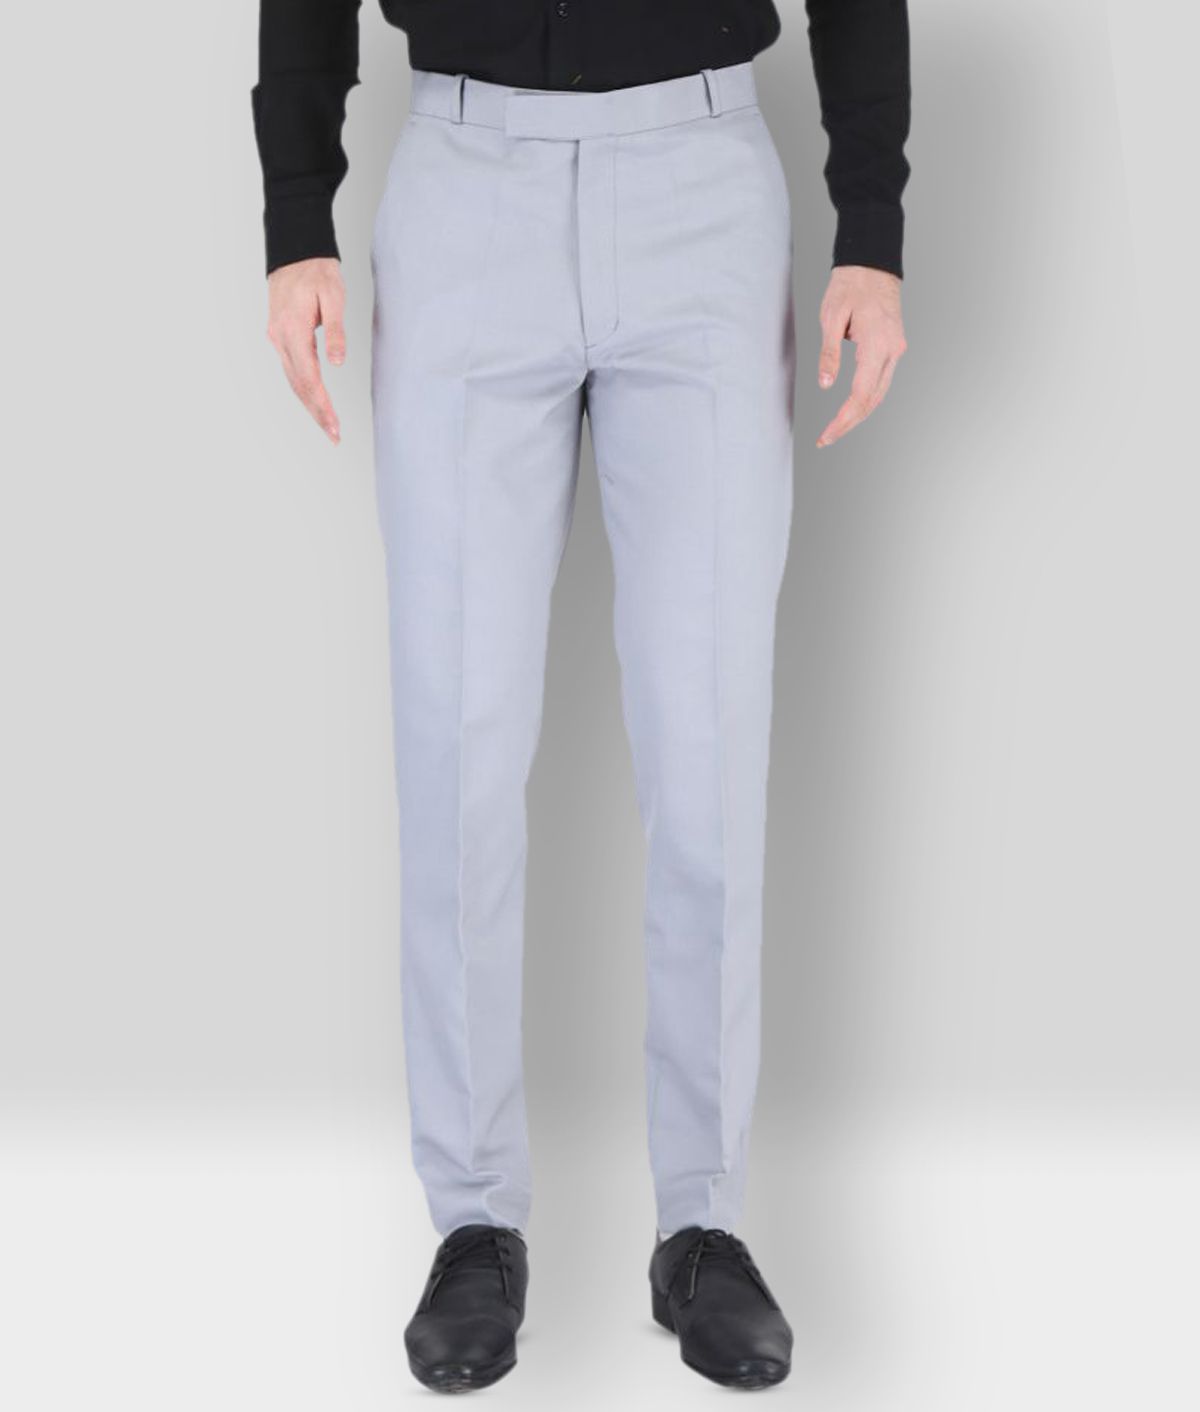 K.S.BRAND - Grey Cotton Blend Regular Fit Men's Formal Pants (Pack of 1)